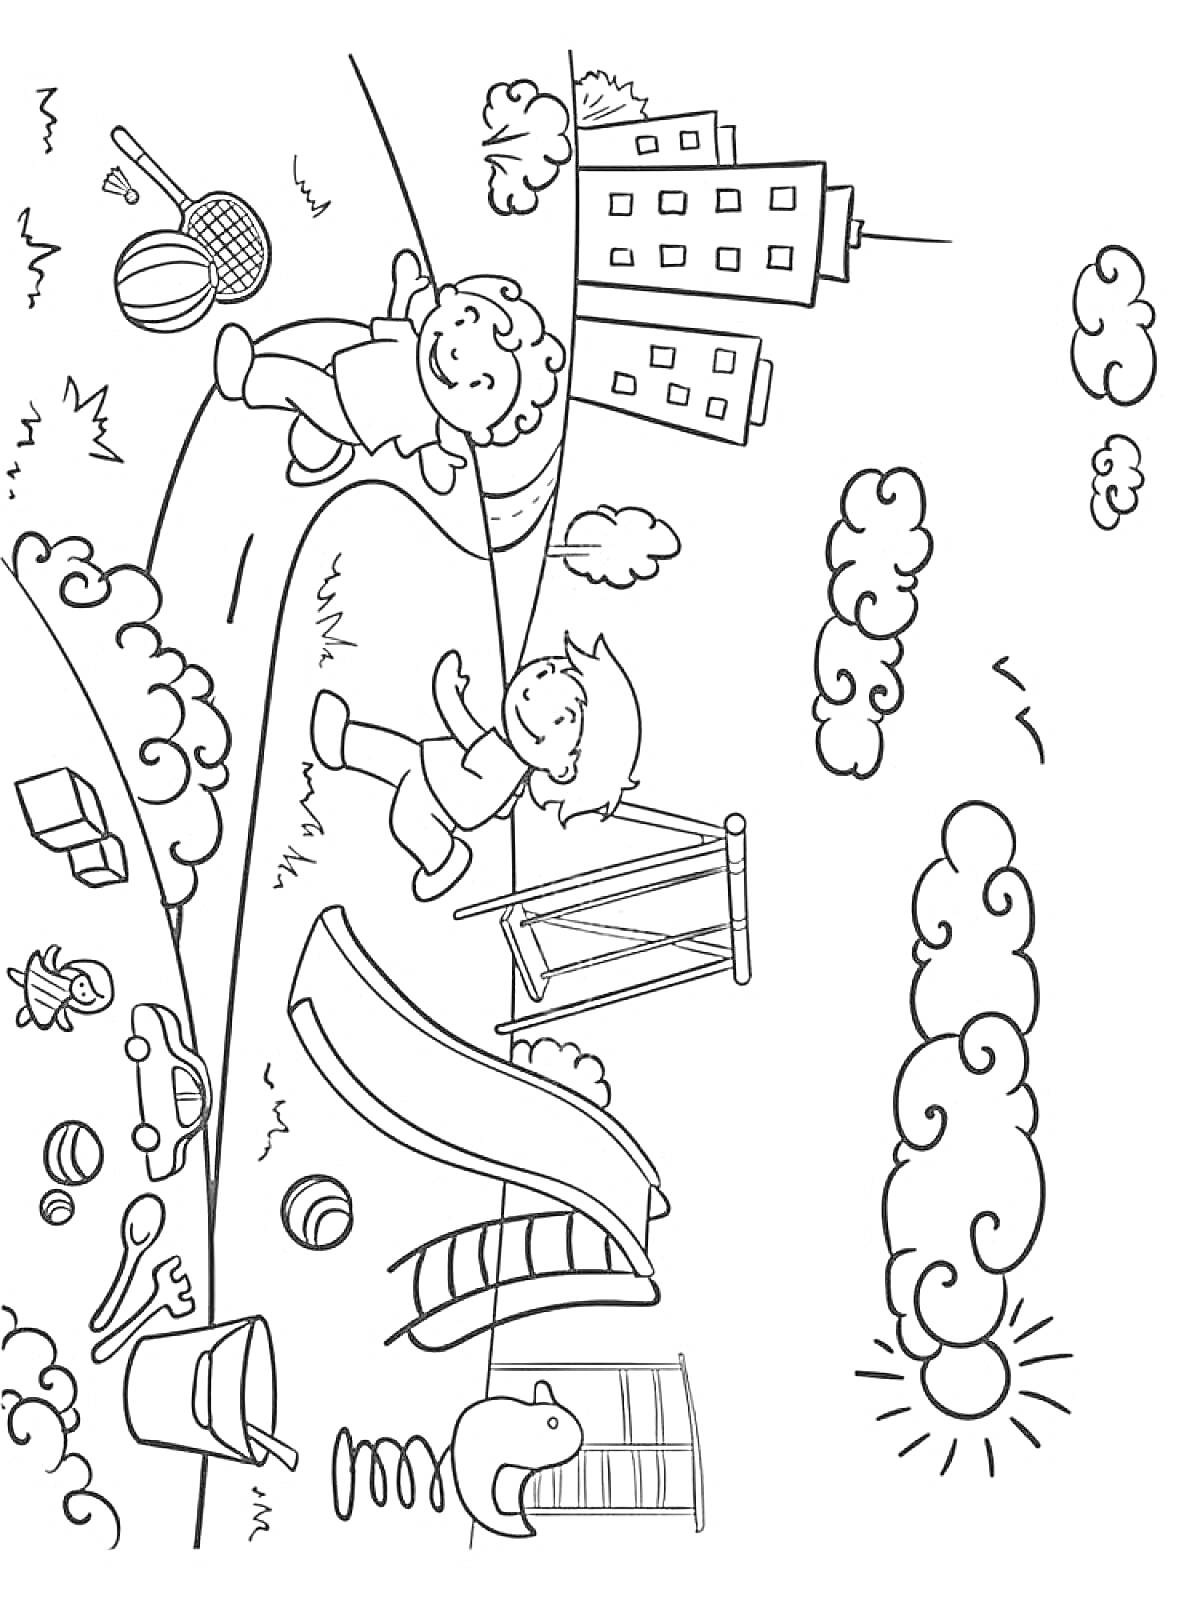 Раскраска Дети на детской площадке с качелями, горкой и спортивным инвентарем